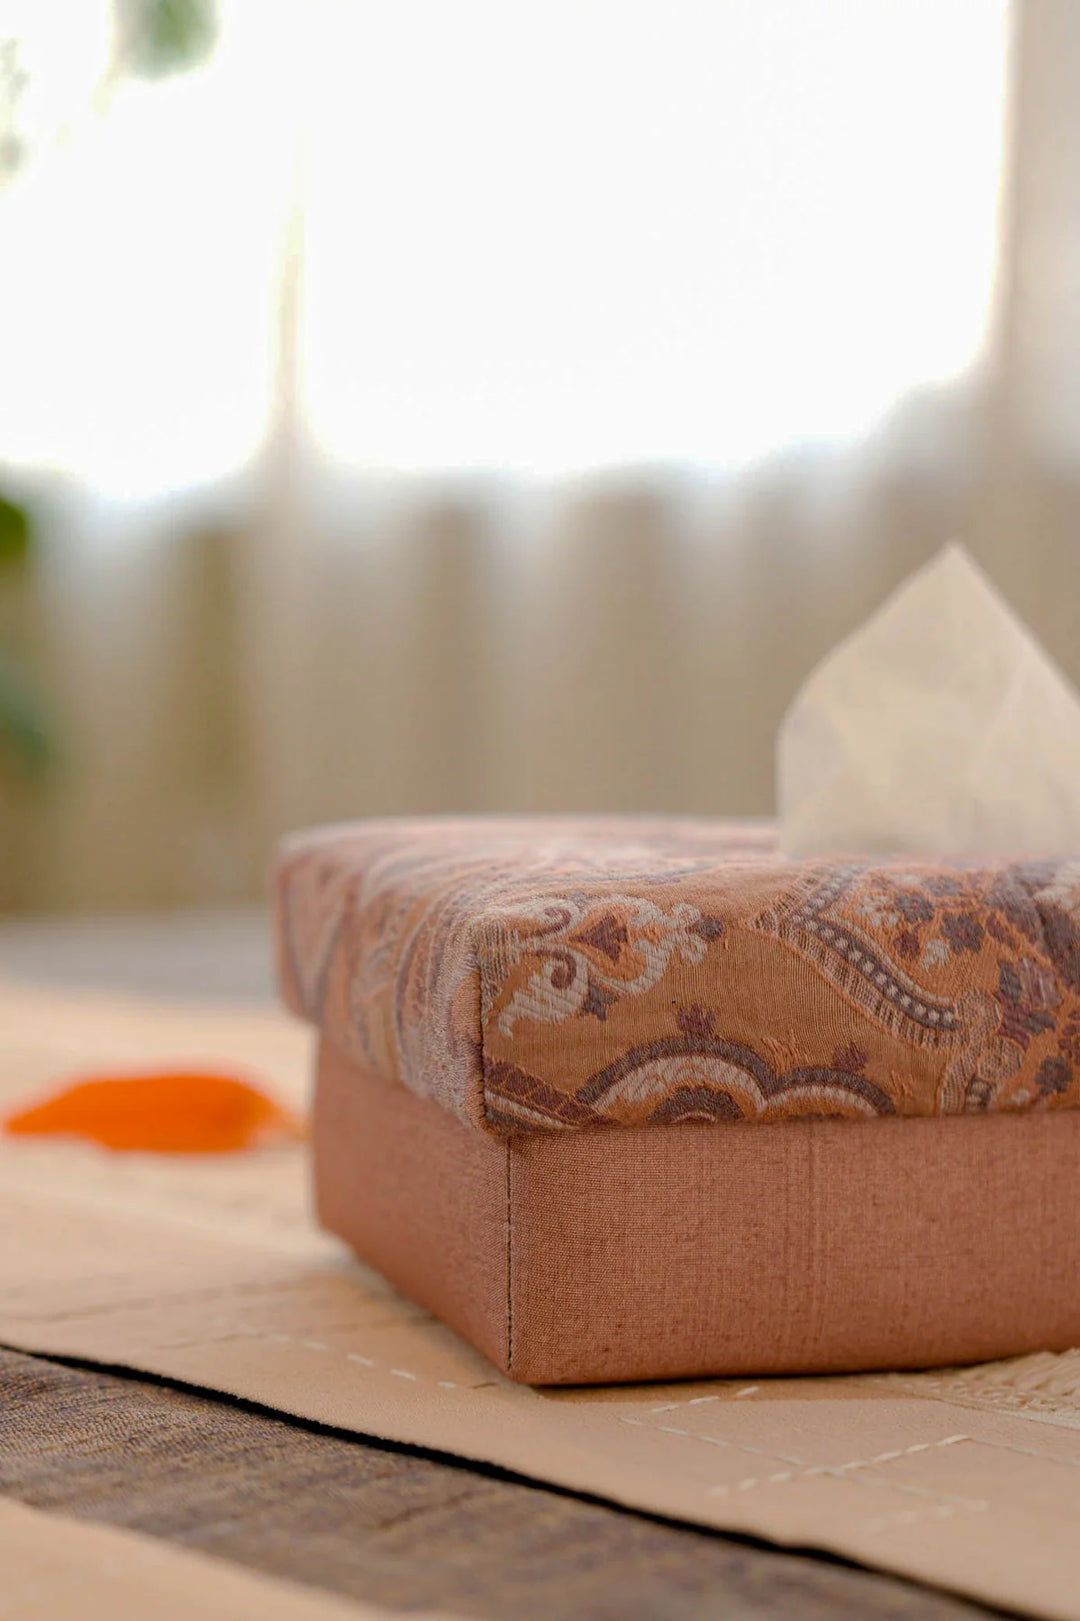 Silk Paisley Tissue Box | Ager Handmade Tissue Box - Brown